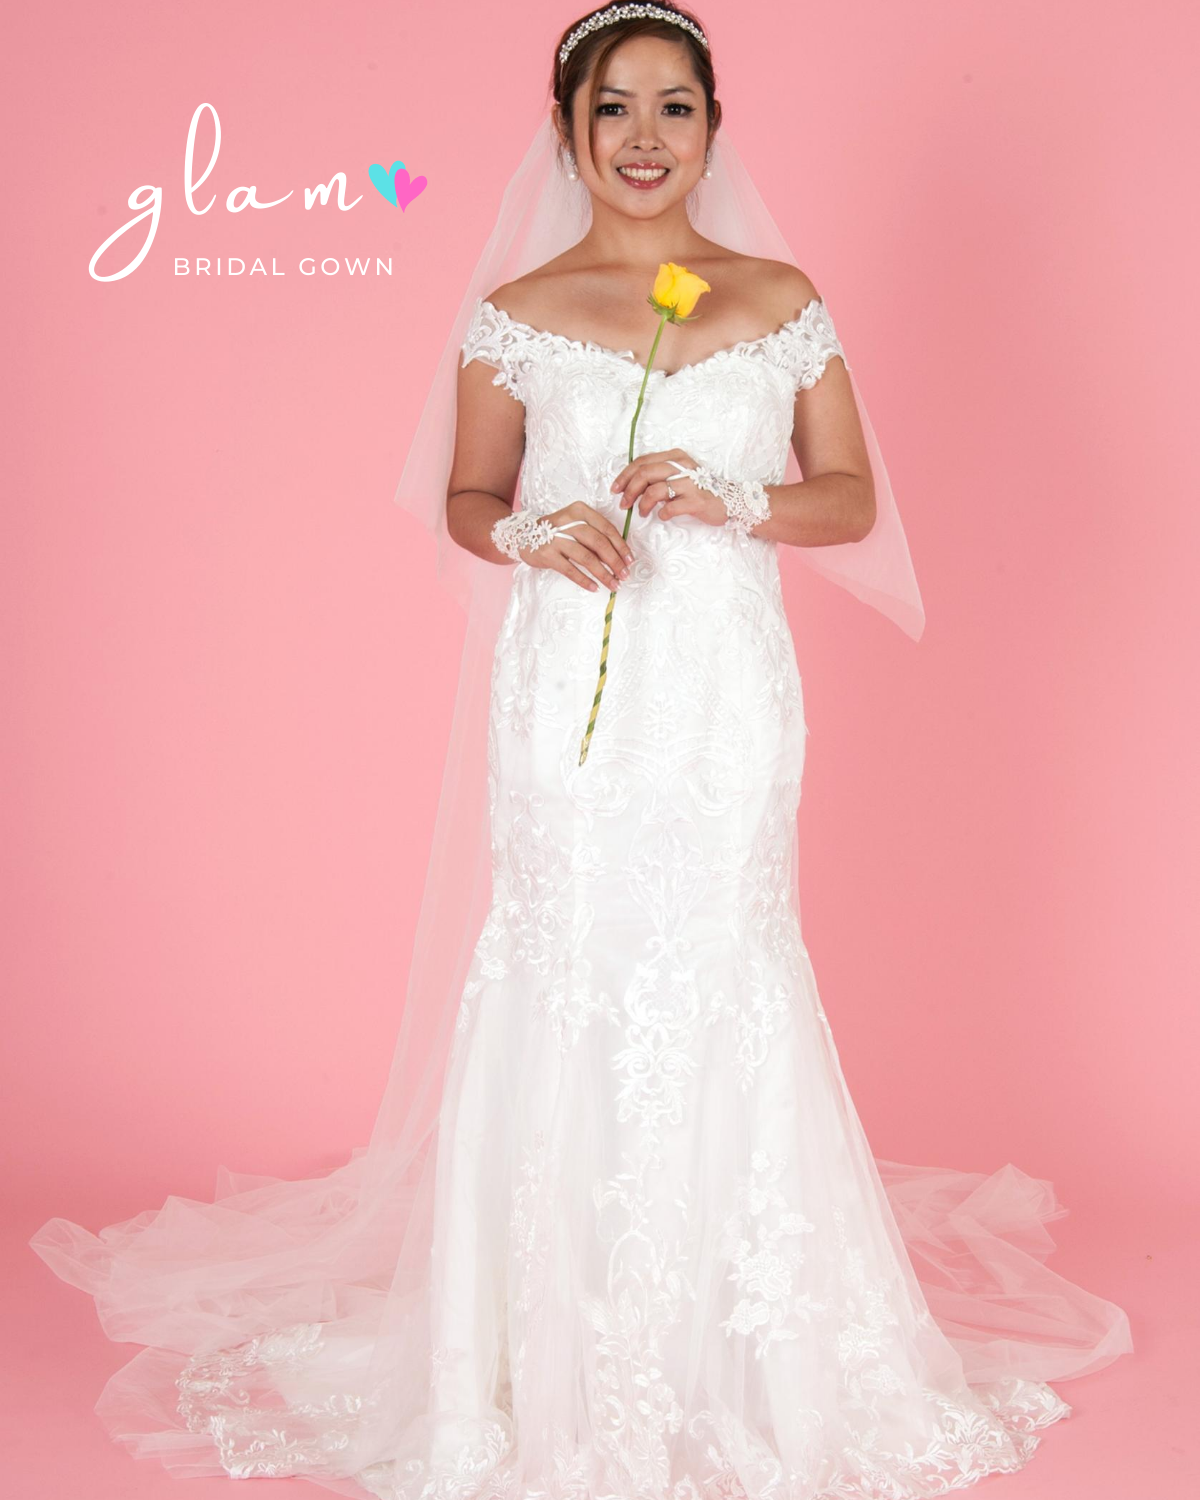 Color Guide to Bridal Dresses – Belle Box Boutique